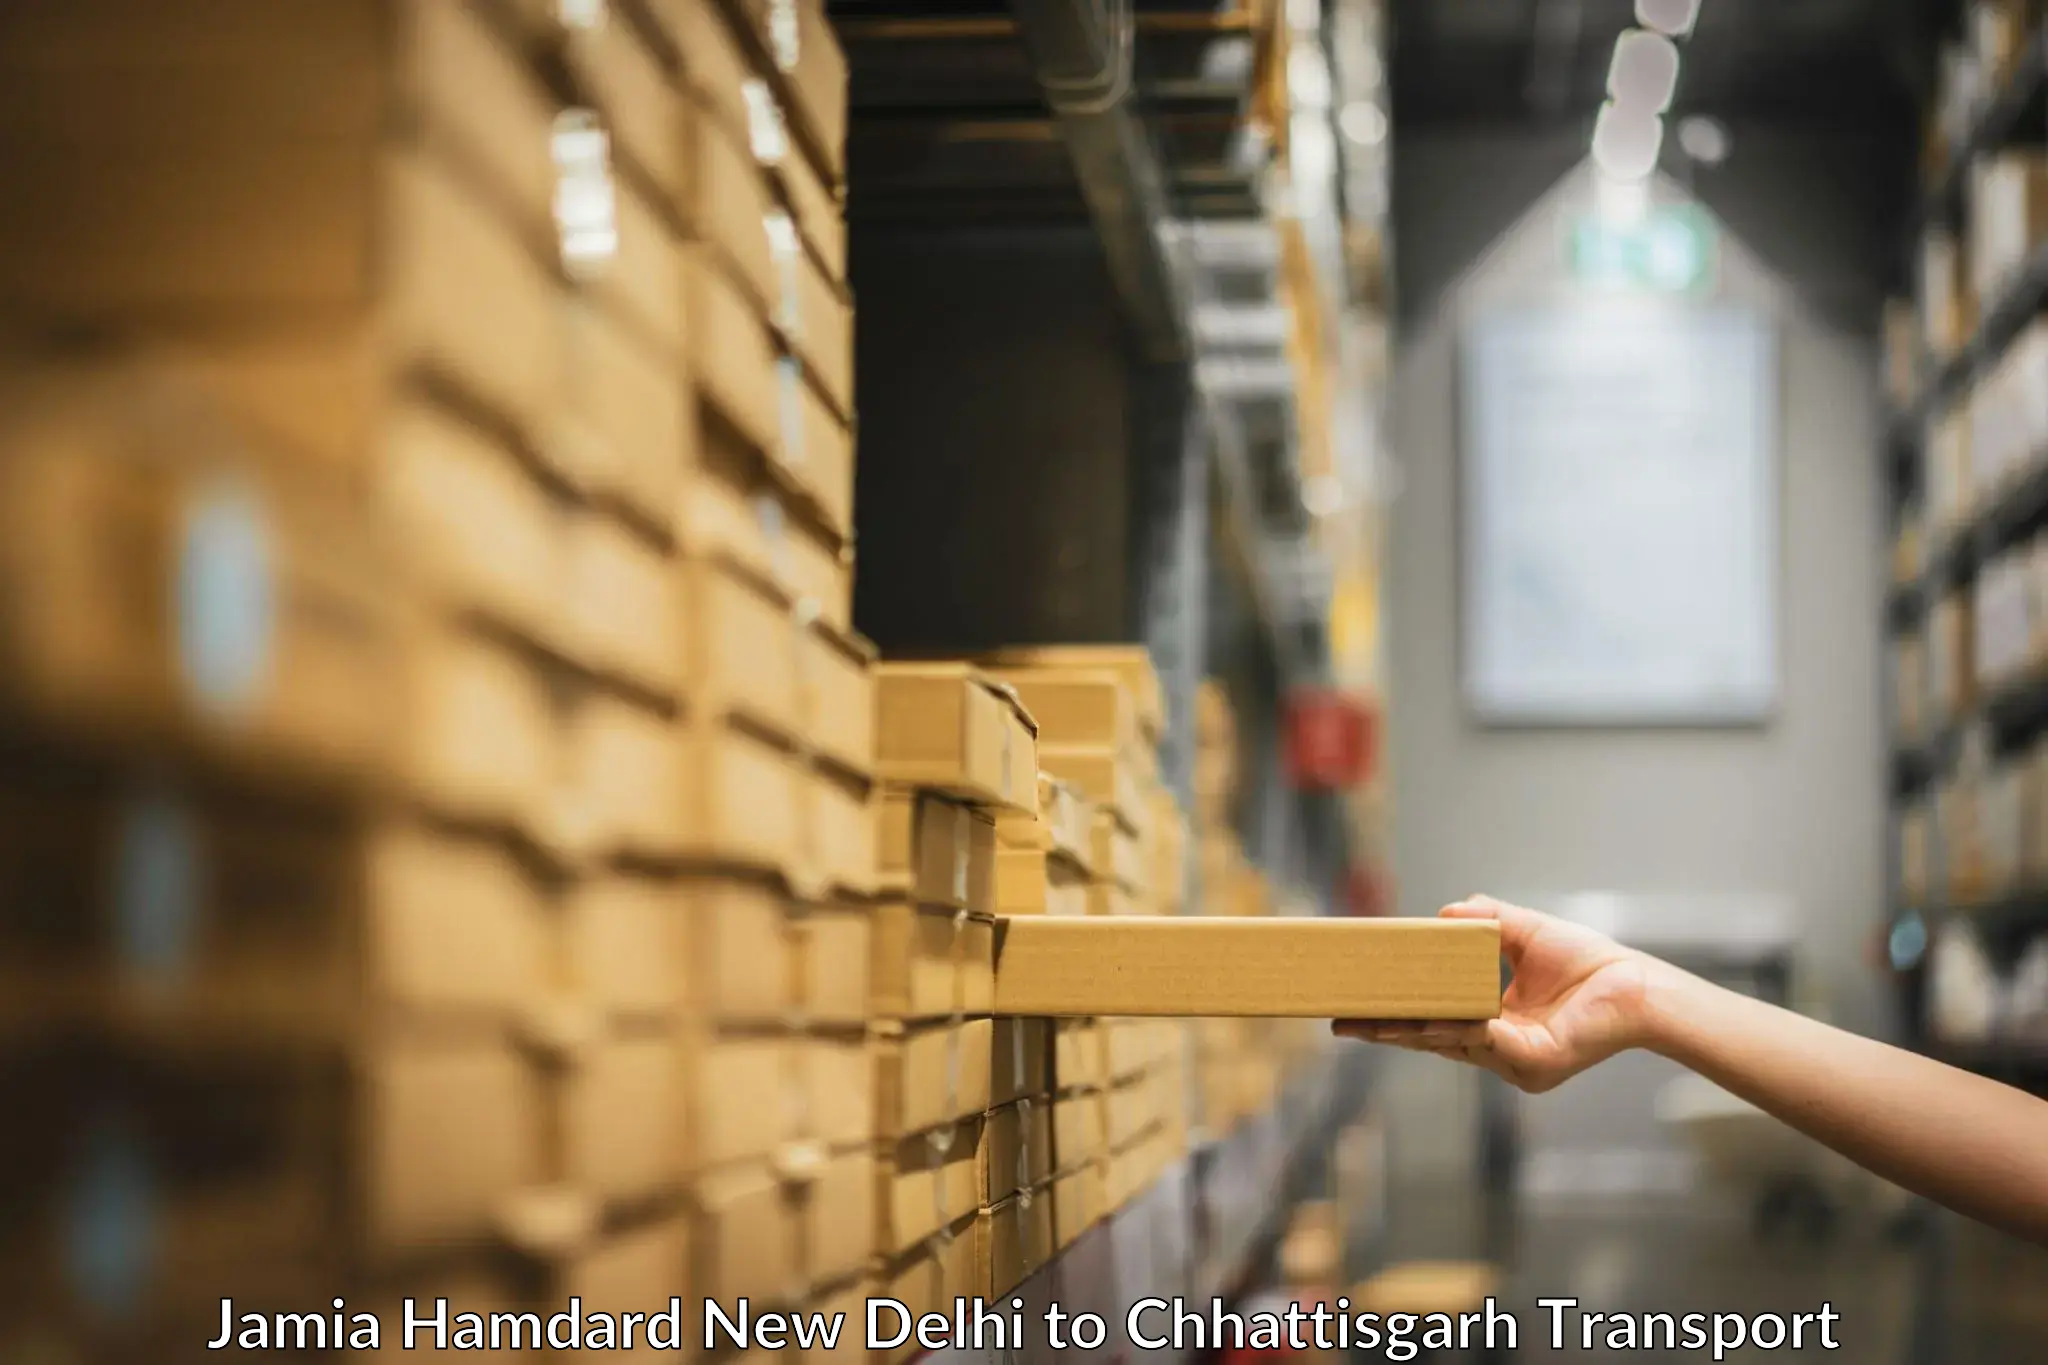 Container transport service Jamia Hamdard New Delhi to Chhattisgarh